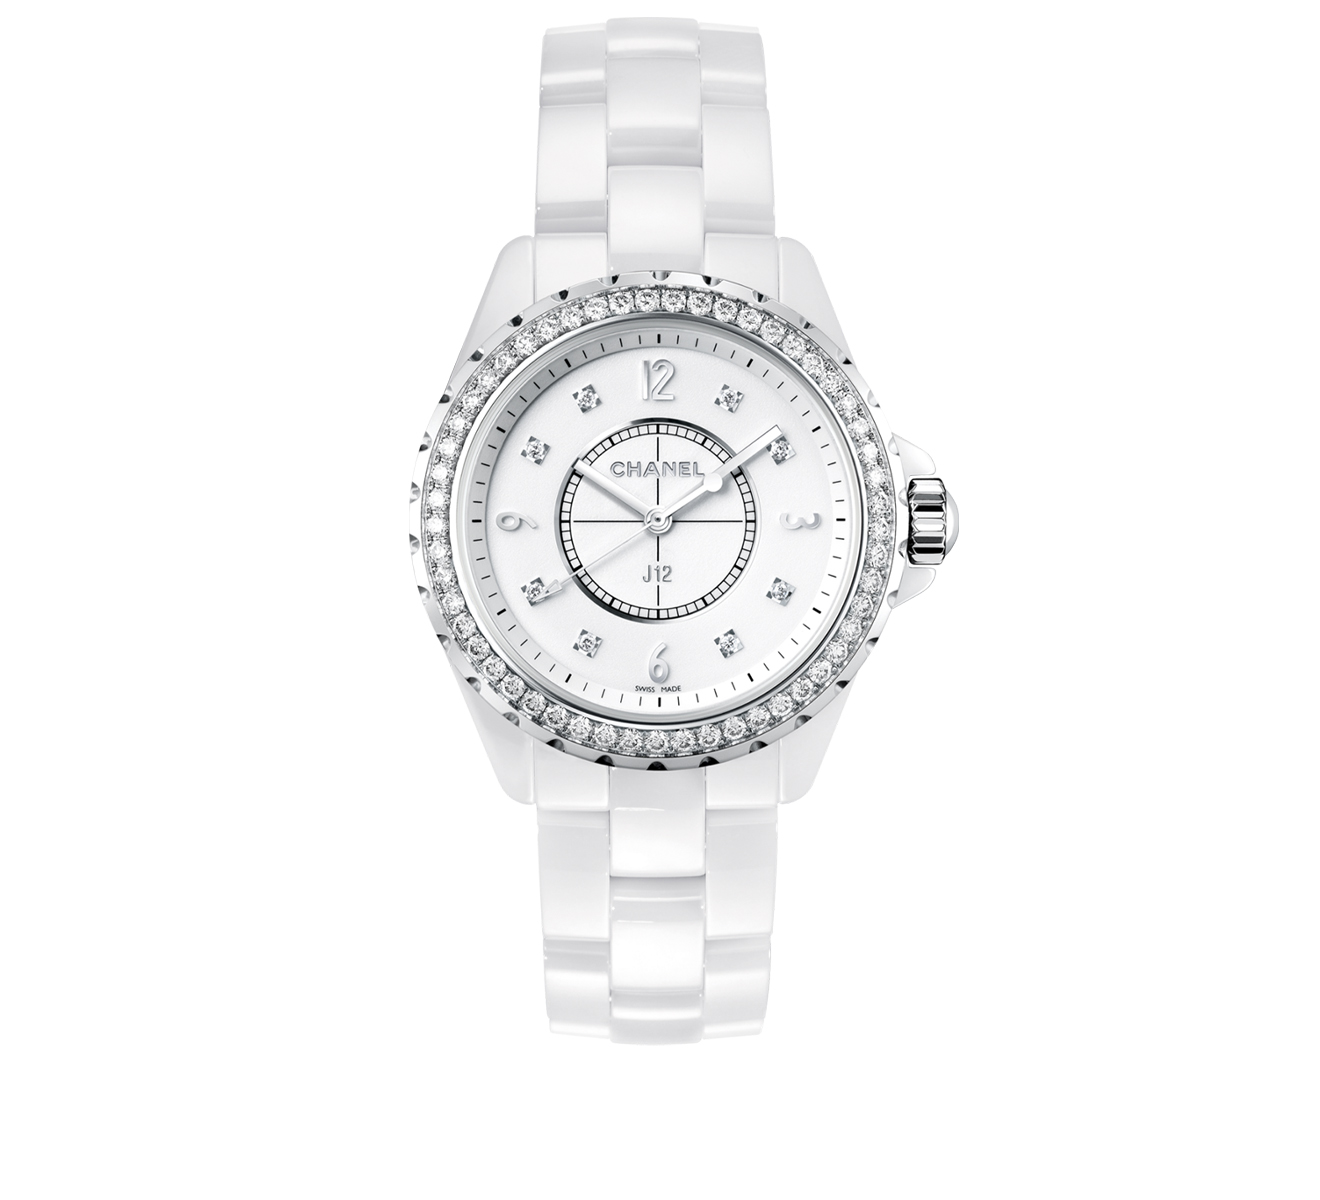 Купить часы Chanel в г Москва каталог и цены на наручные часы Шанель